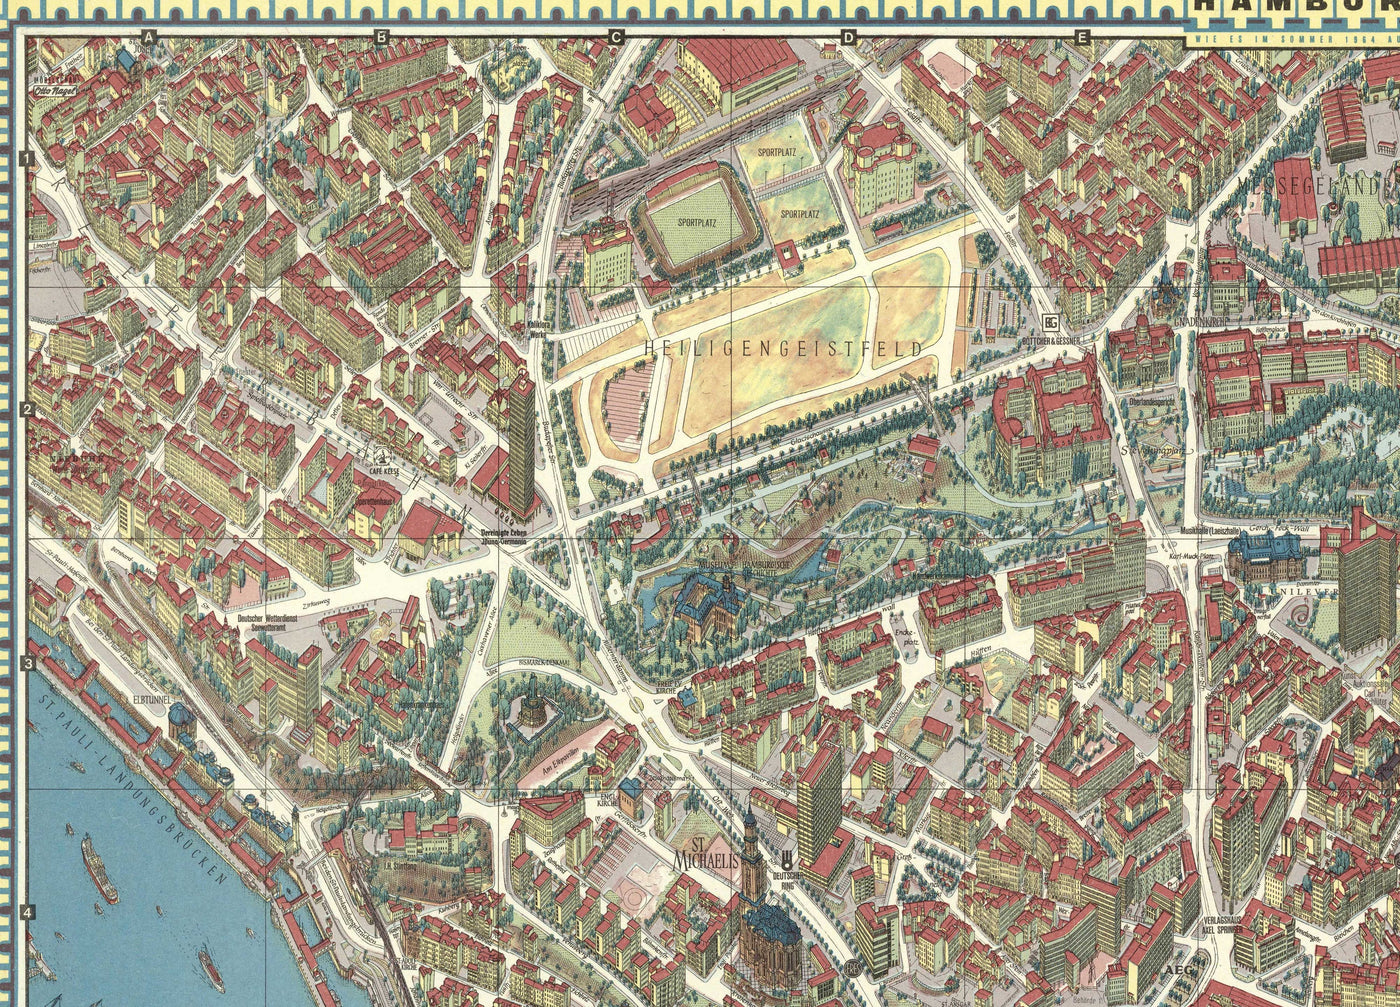 Alte Karte von Hamburg im Jahr 1964 von Hermann Bollman - Binnenalster, Alster, Heiligengeistfeld, Planten un Blomen, Hauptbahnhof